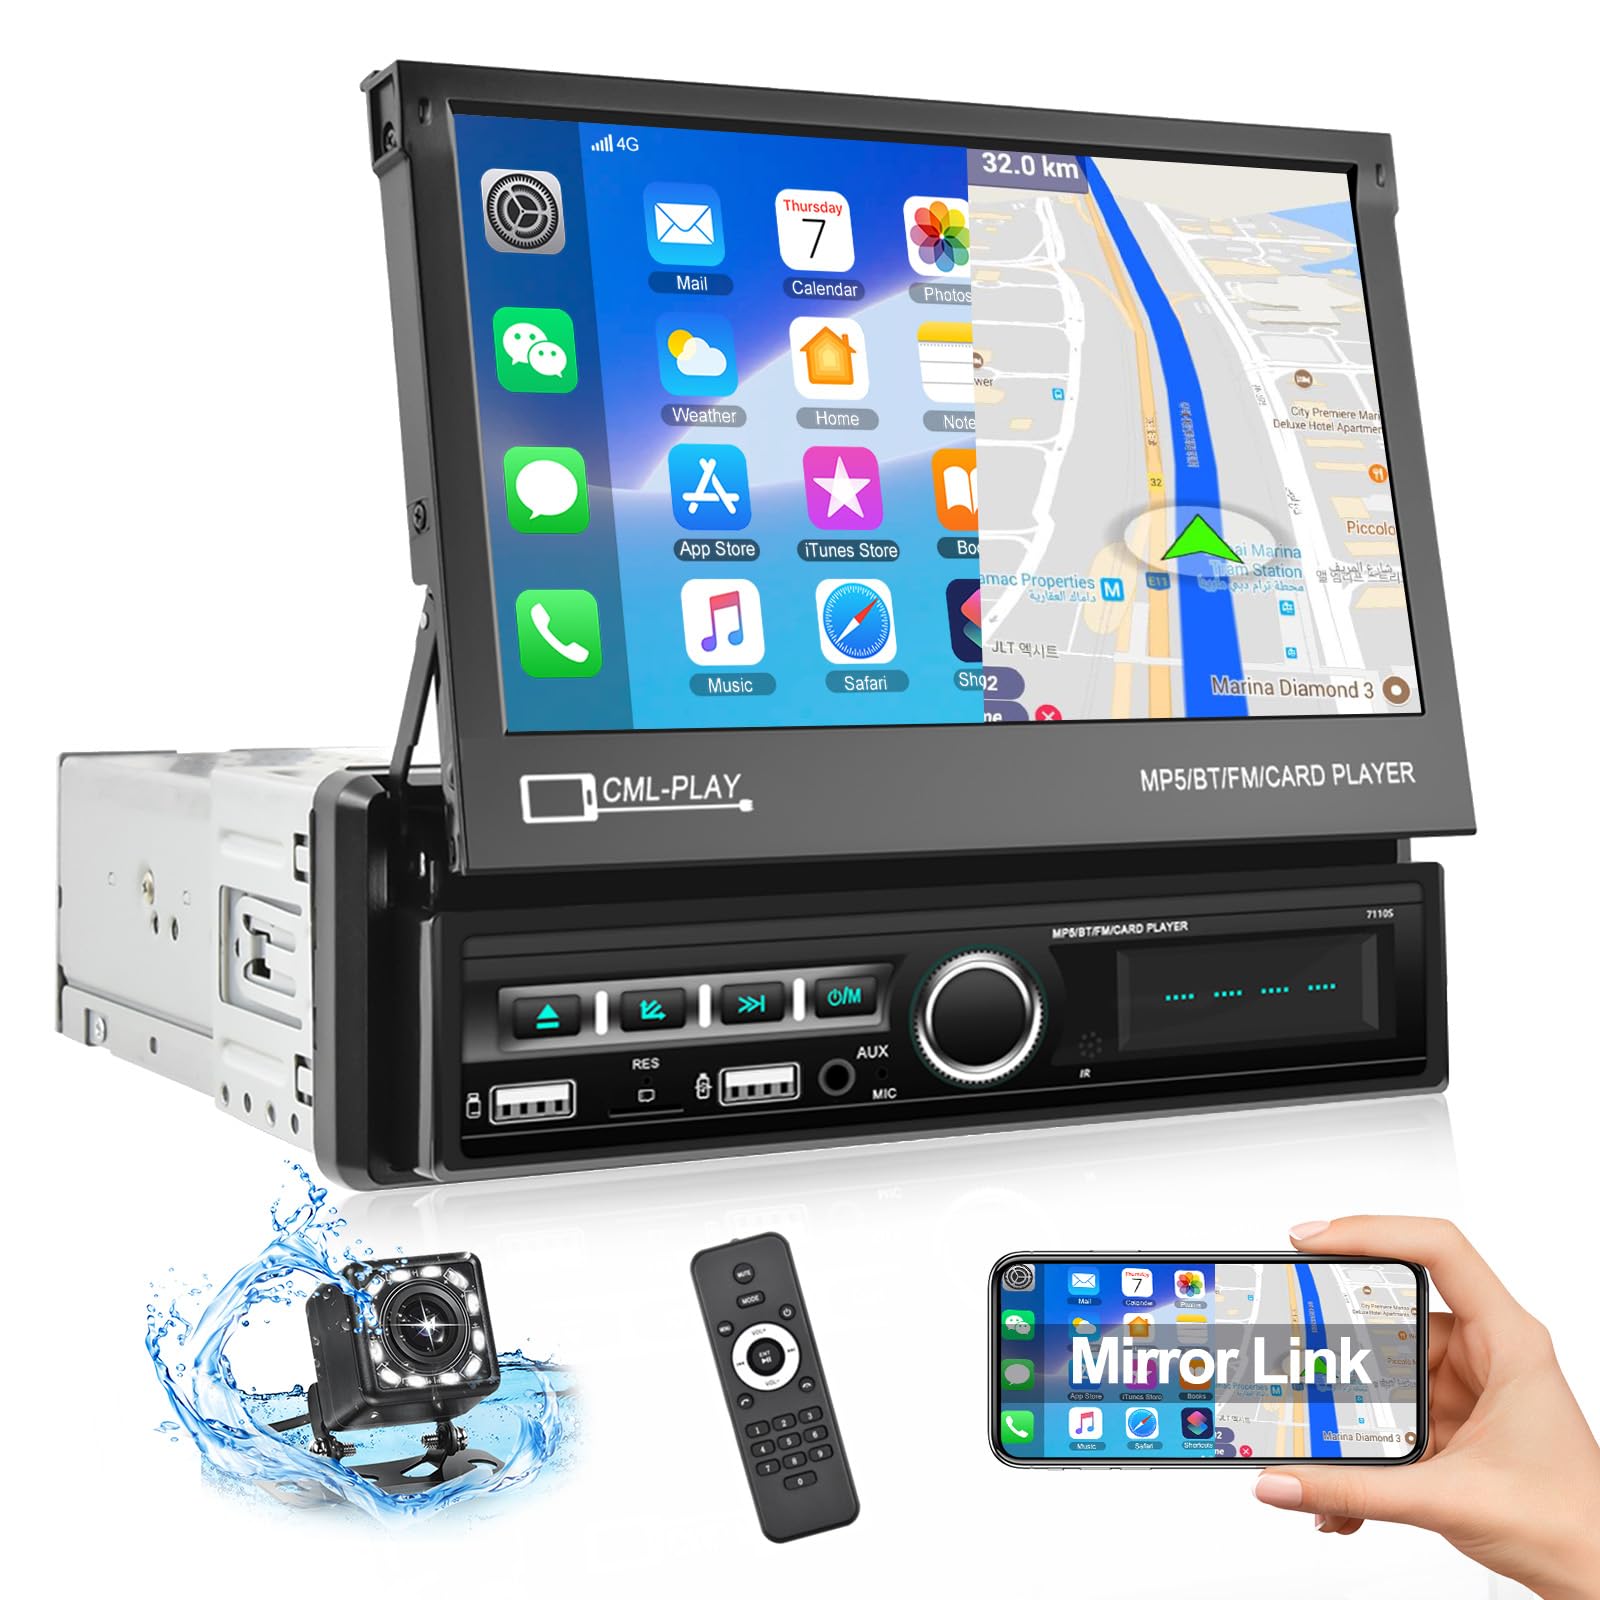 CAMECHO Autoradio 1 Din mit Bluetooth Freisprecheinrichtung, 7 Zoll Motorisierte Bildschirm Unterstützung USB/AUX-IN/FM/TF/Mirror Link für Android/iOS +Rückfahrkamera